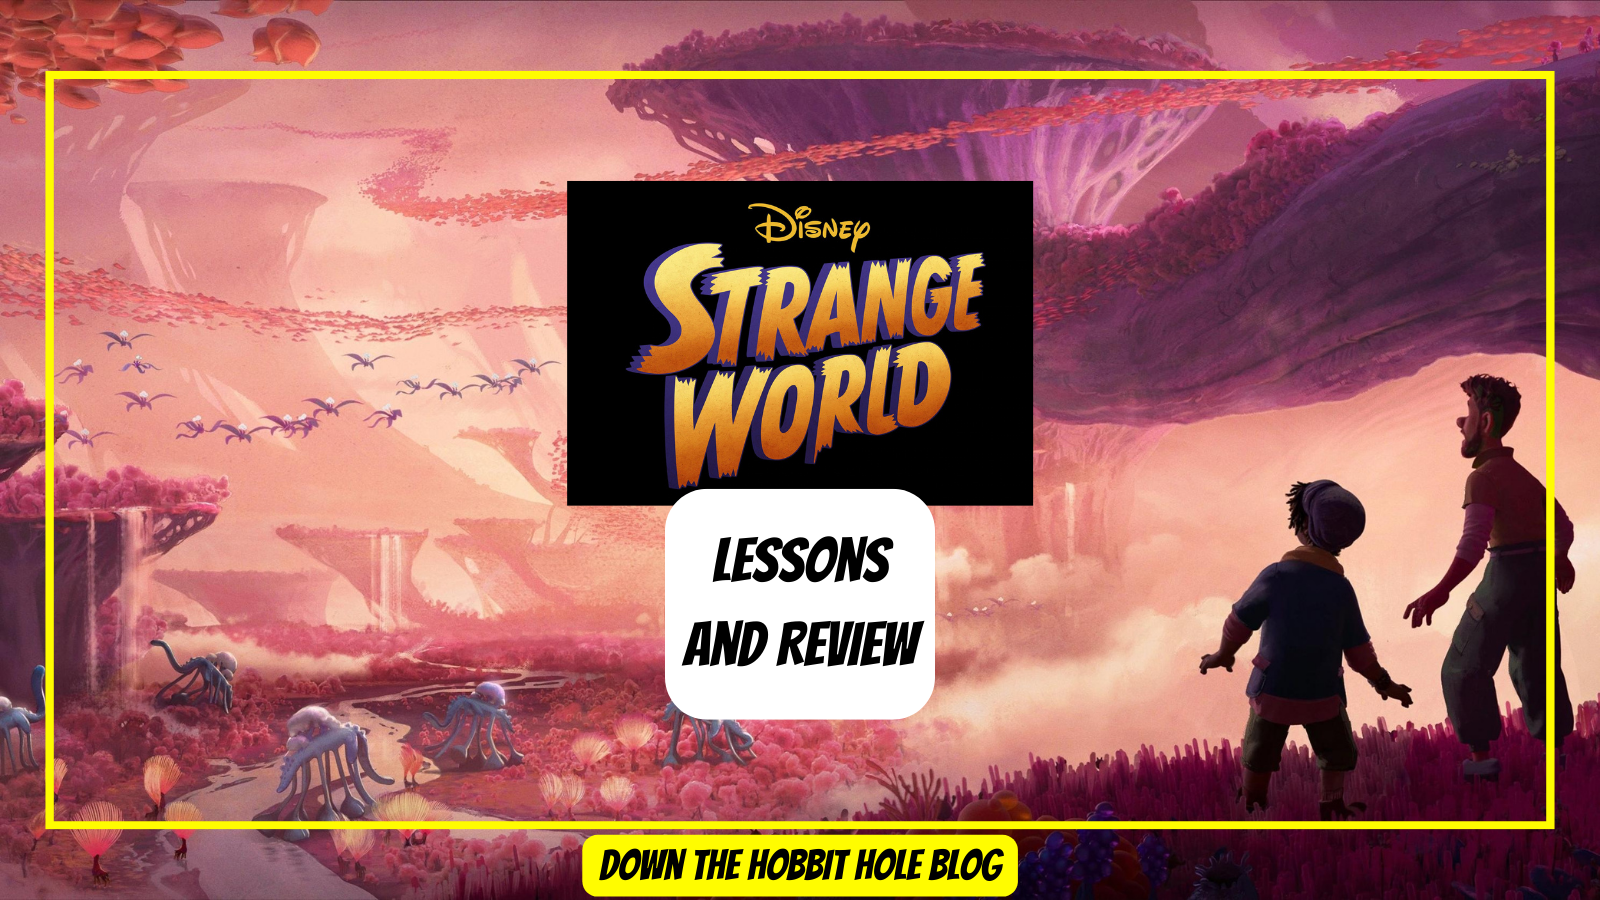 Lessons from Strange World